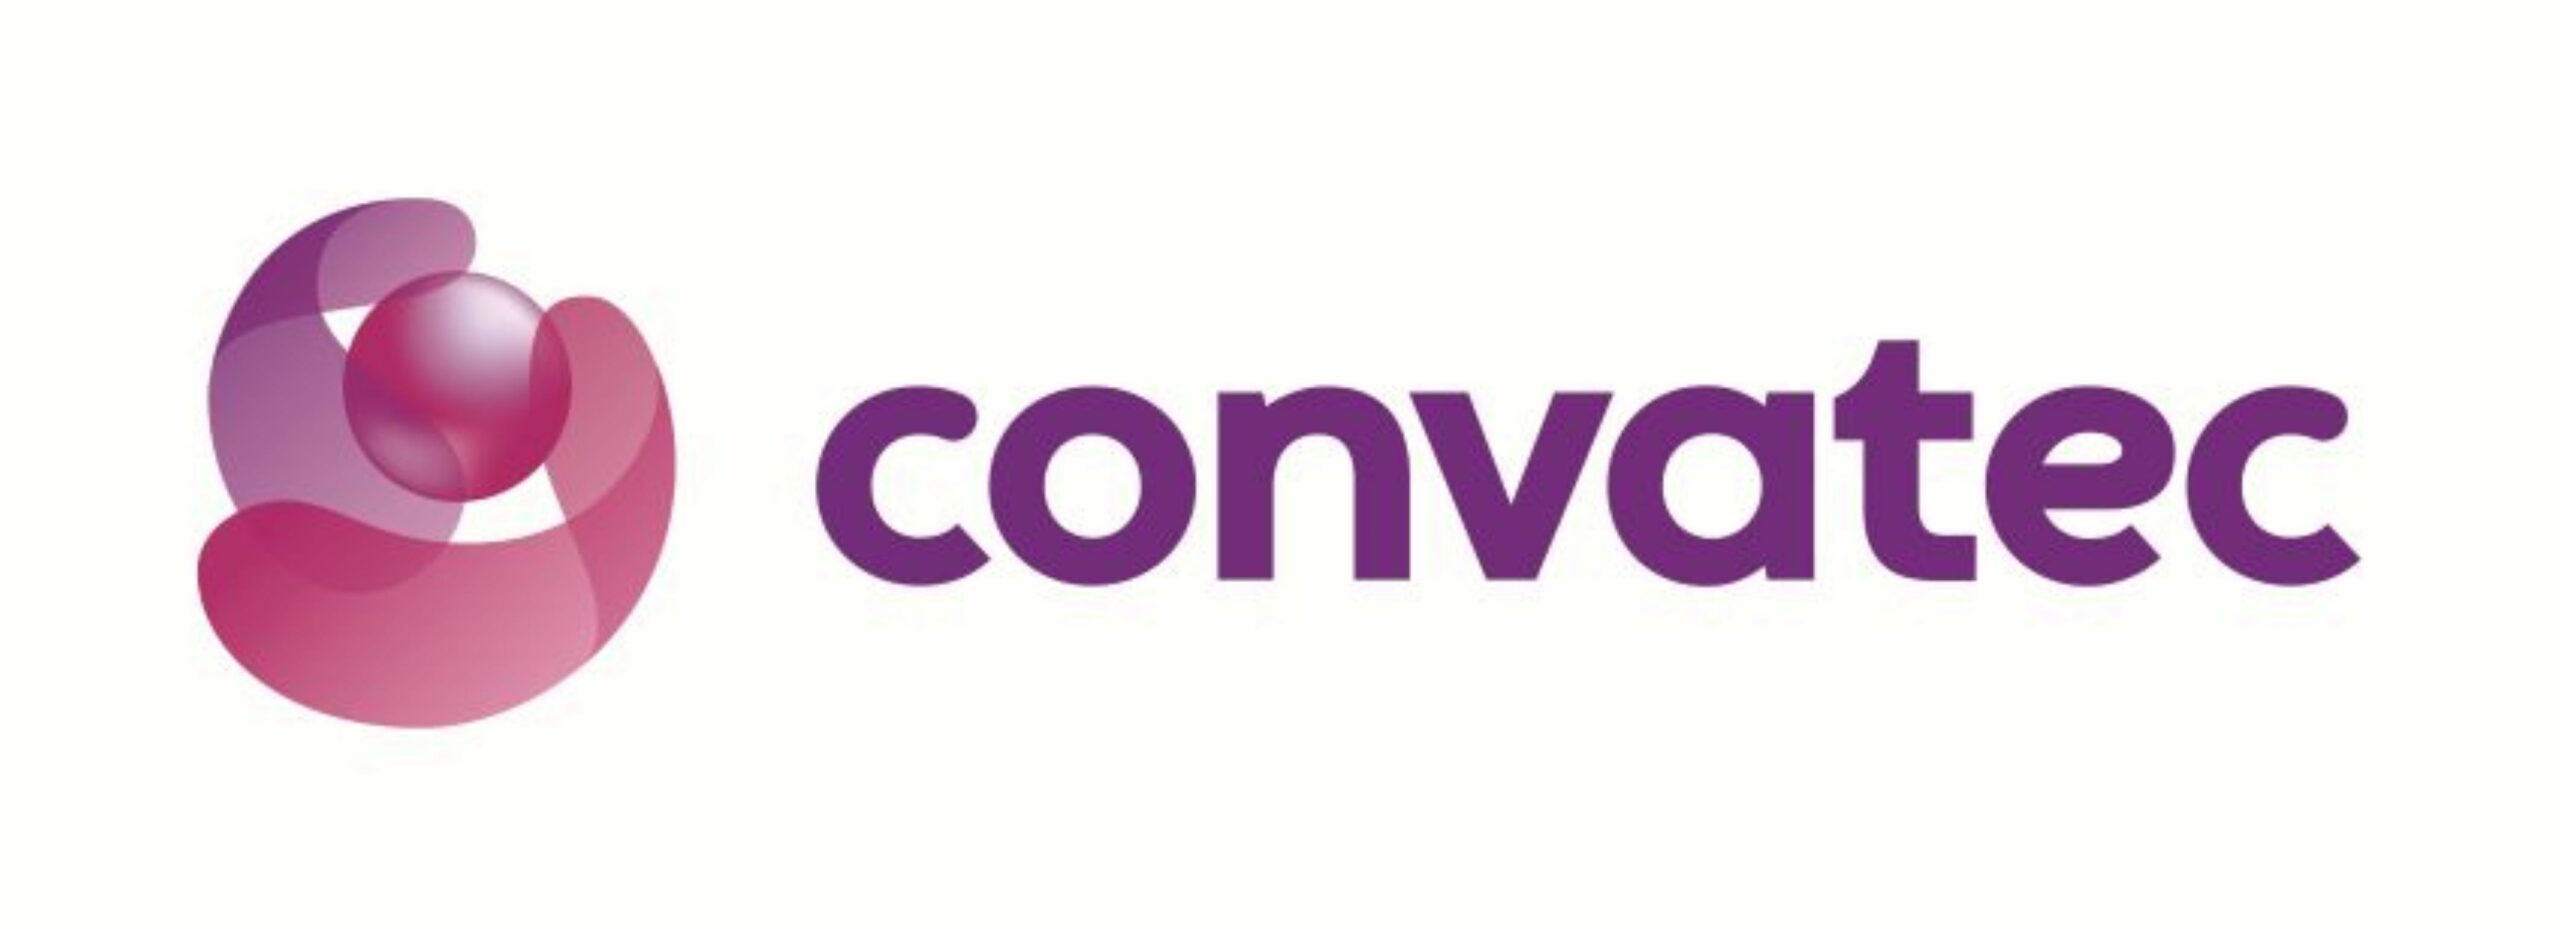 Convatec Inc.